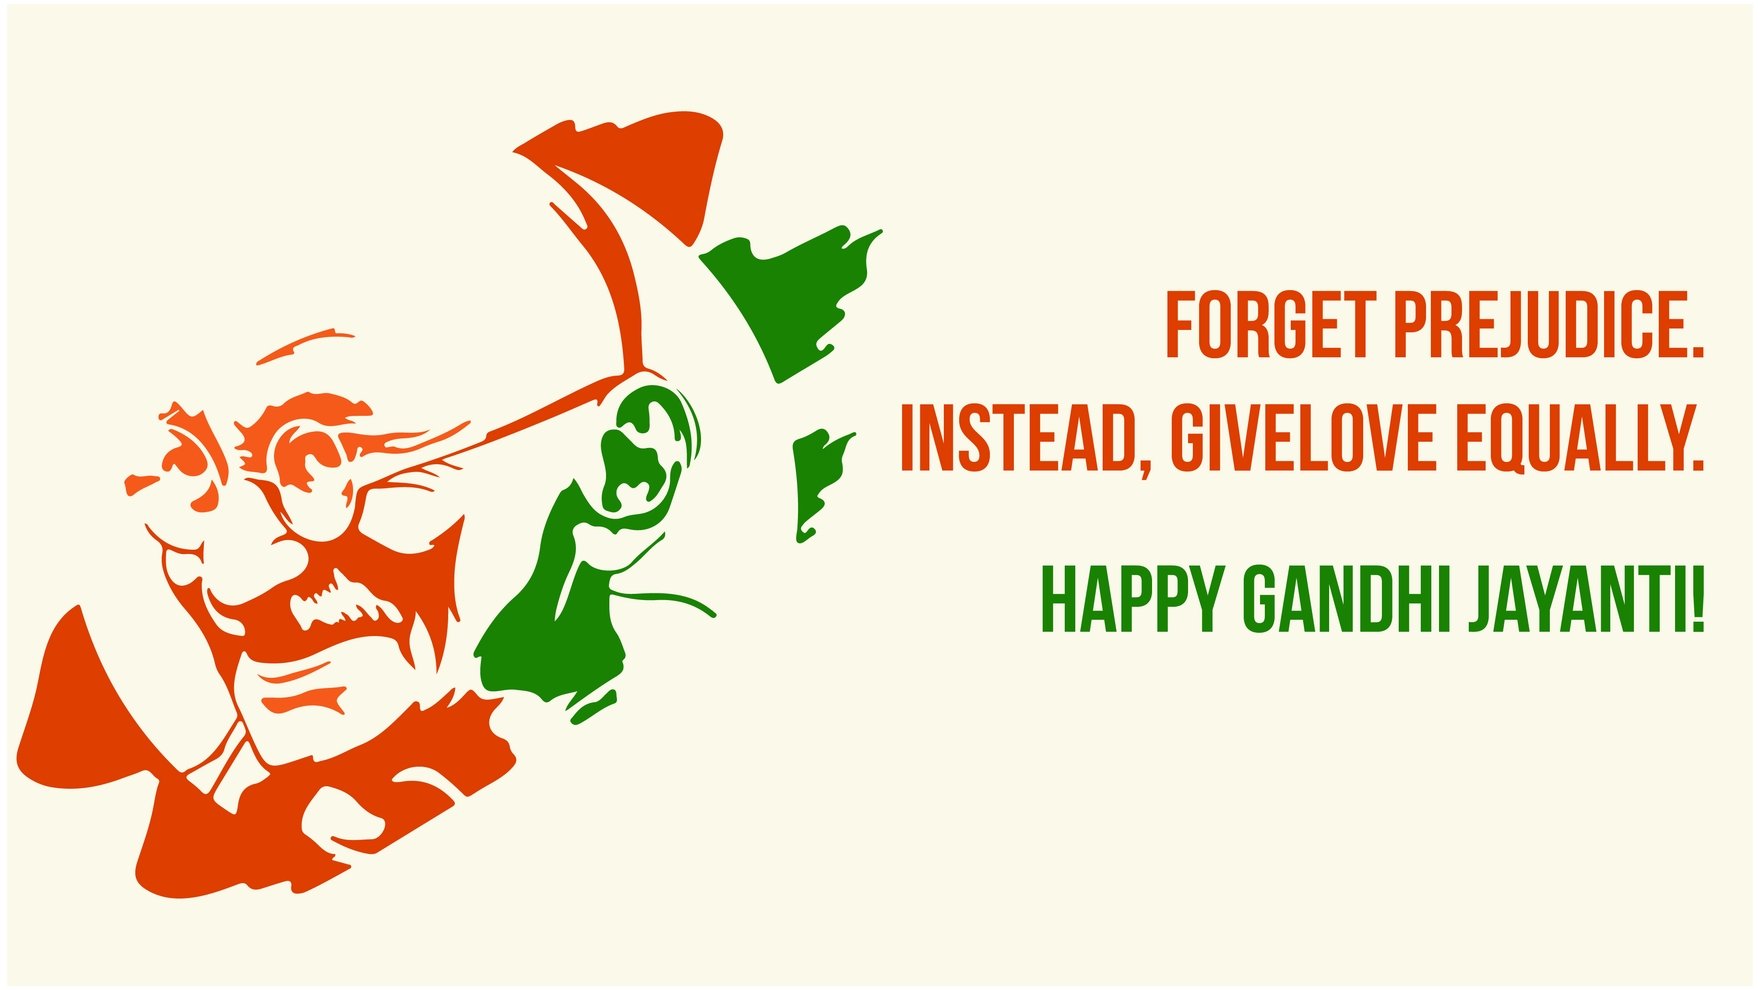 Free Gandhi Jayanti Greeting Card Background in PDF, Illustrator, PSD, EPS, SVG, JPG, PNG